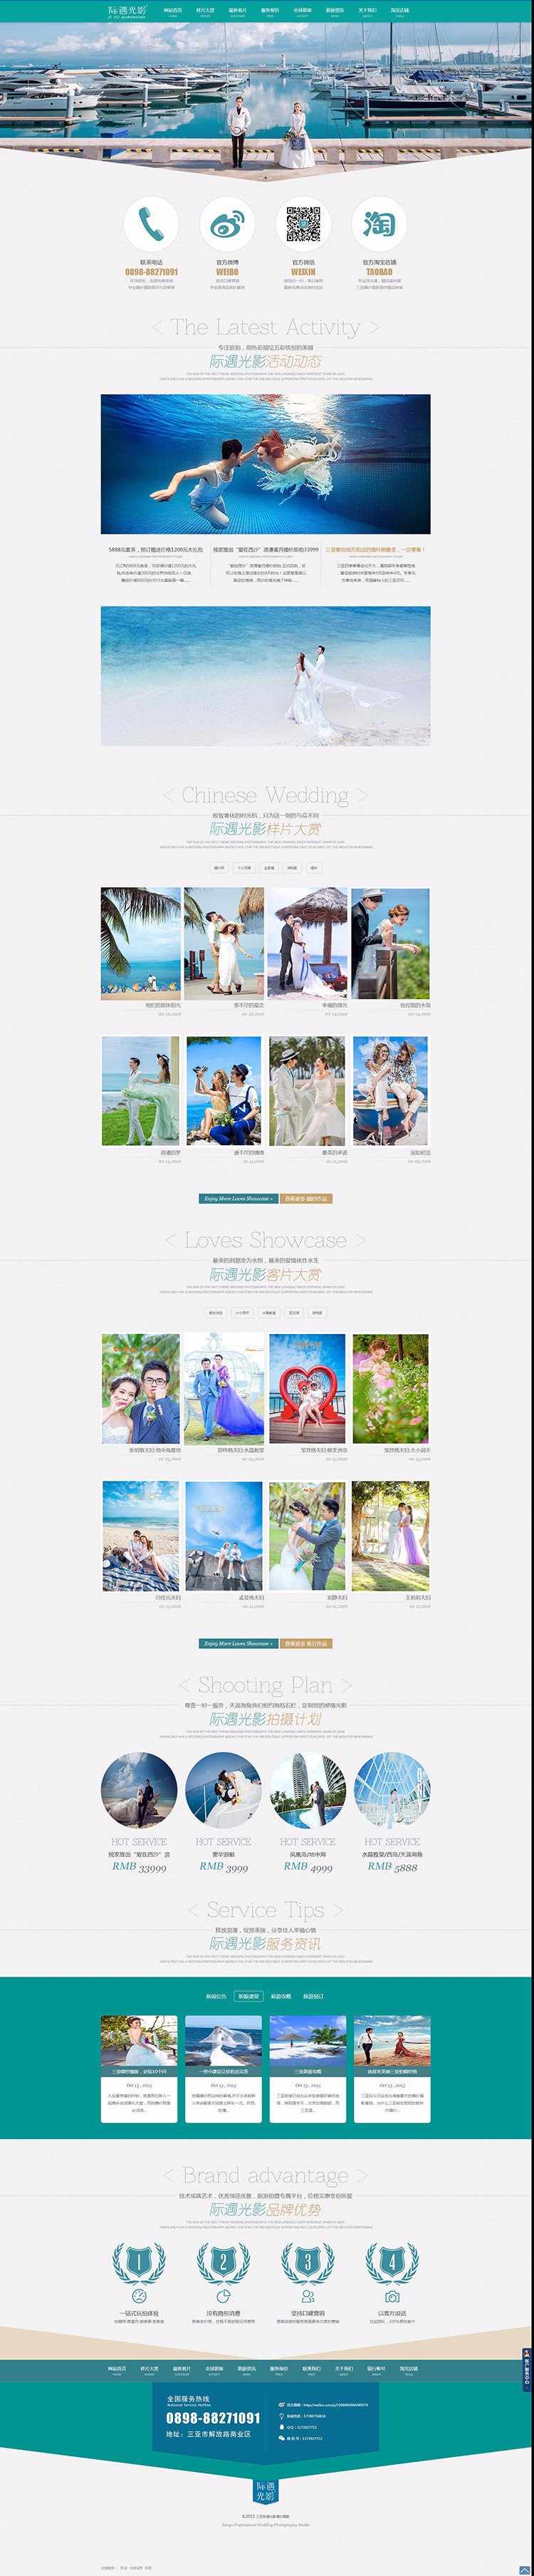 织梦大气婚纱影楼网站源码 DEDECMS摄影网站模板整站高端HTML5 